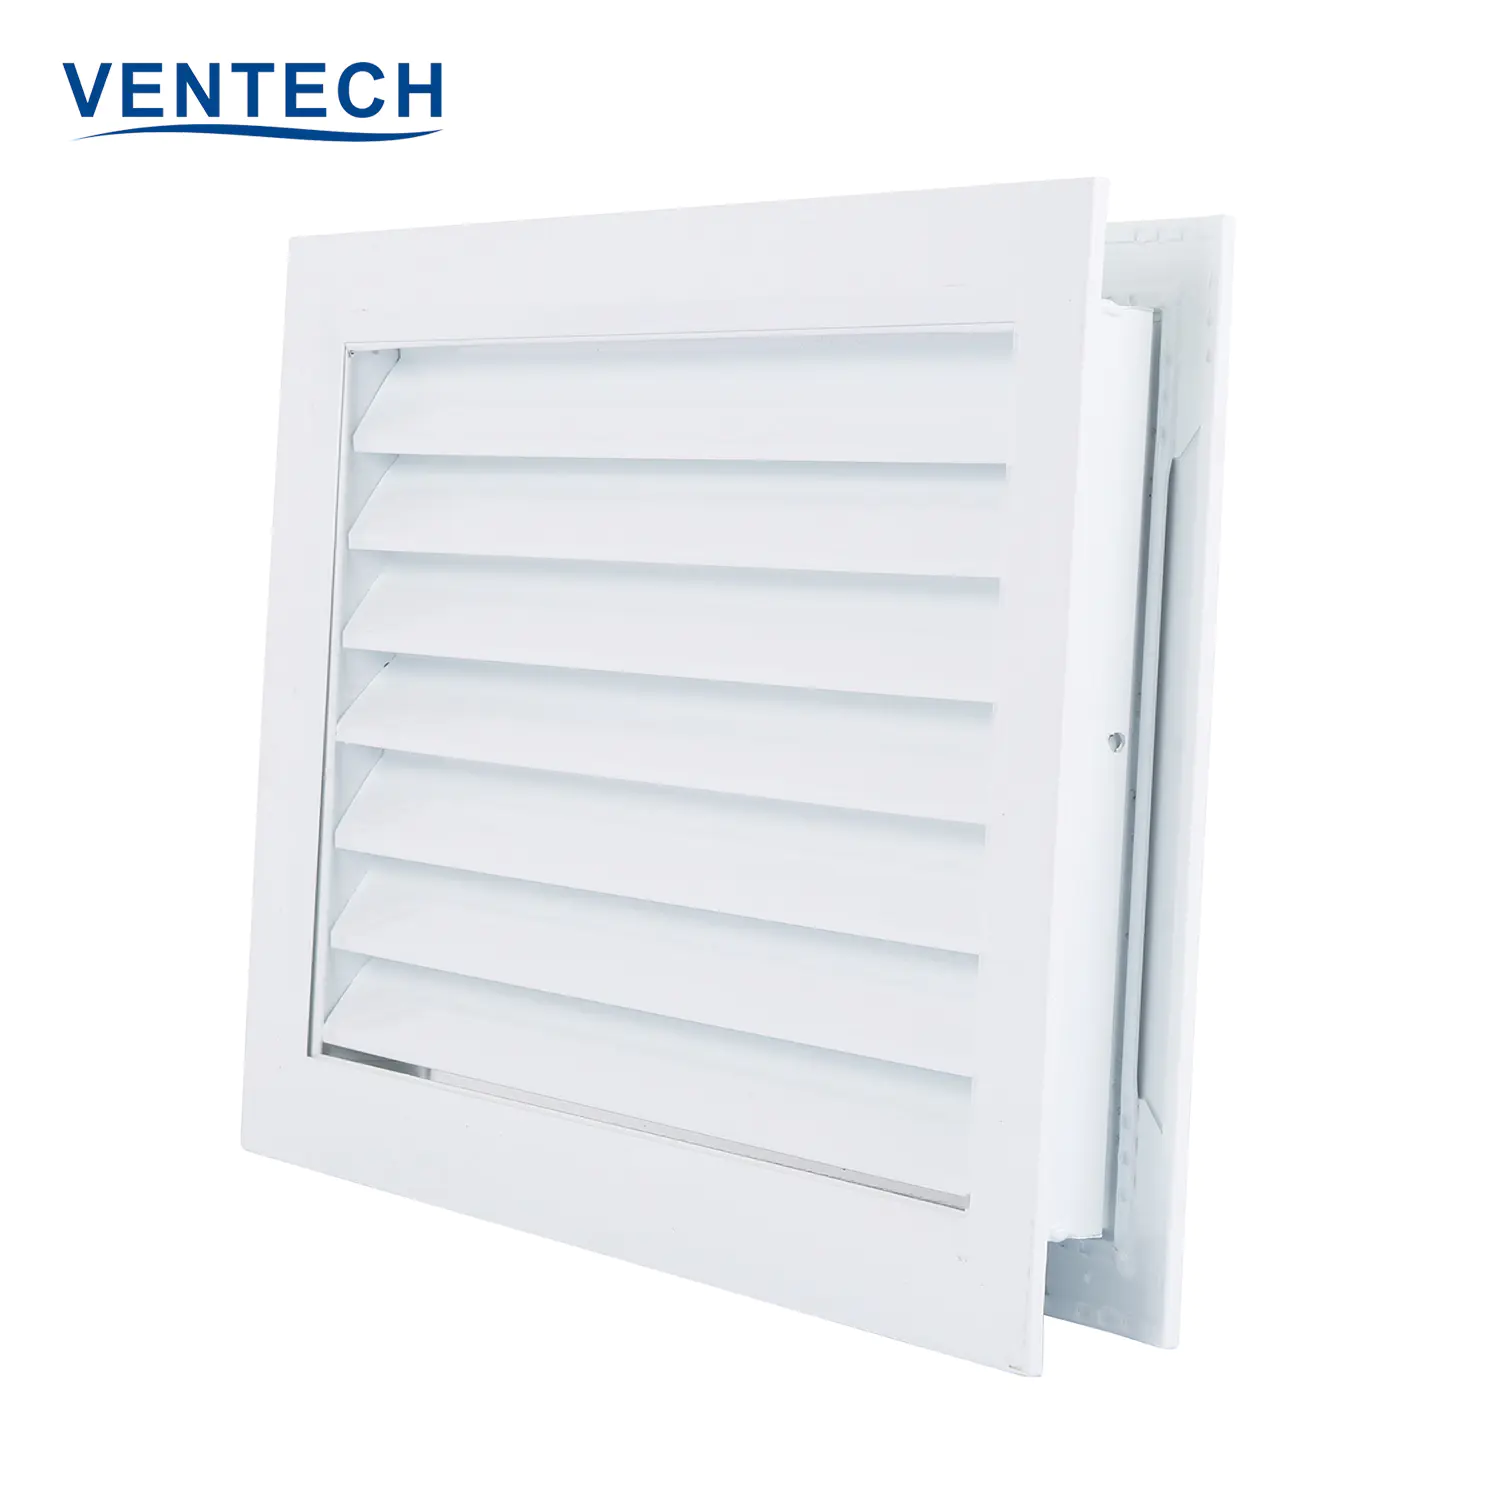 Hvac System Supply Air Conditioner Aluminum Door Bathroom Vent